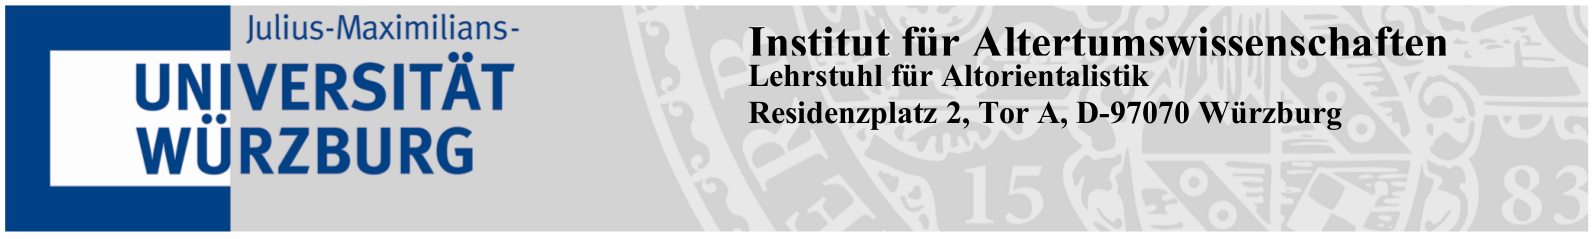 Institut für Altertumswissenschaften, Lehrstuhl für Altorientalistik, Residenzplatz 2, Tor A, D-97070 Würzburg